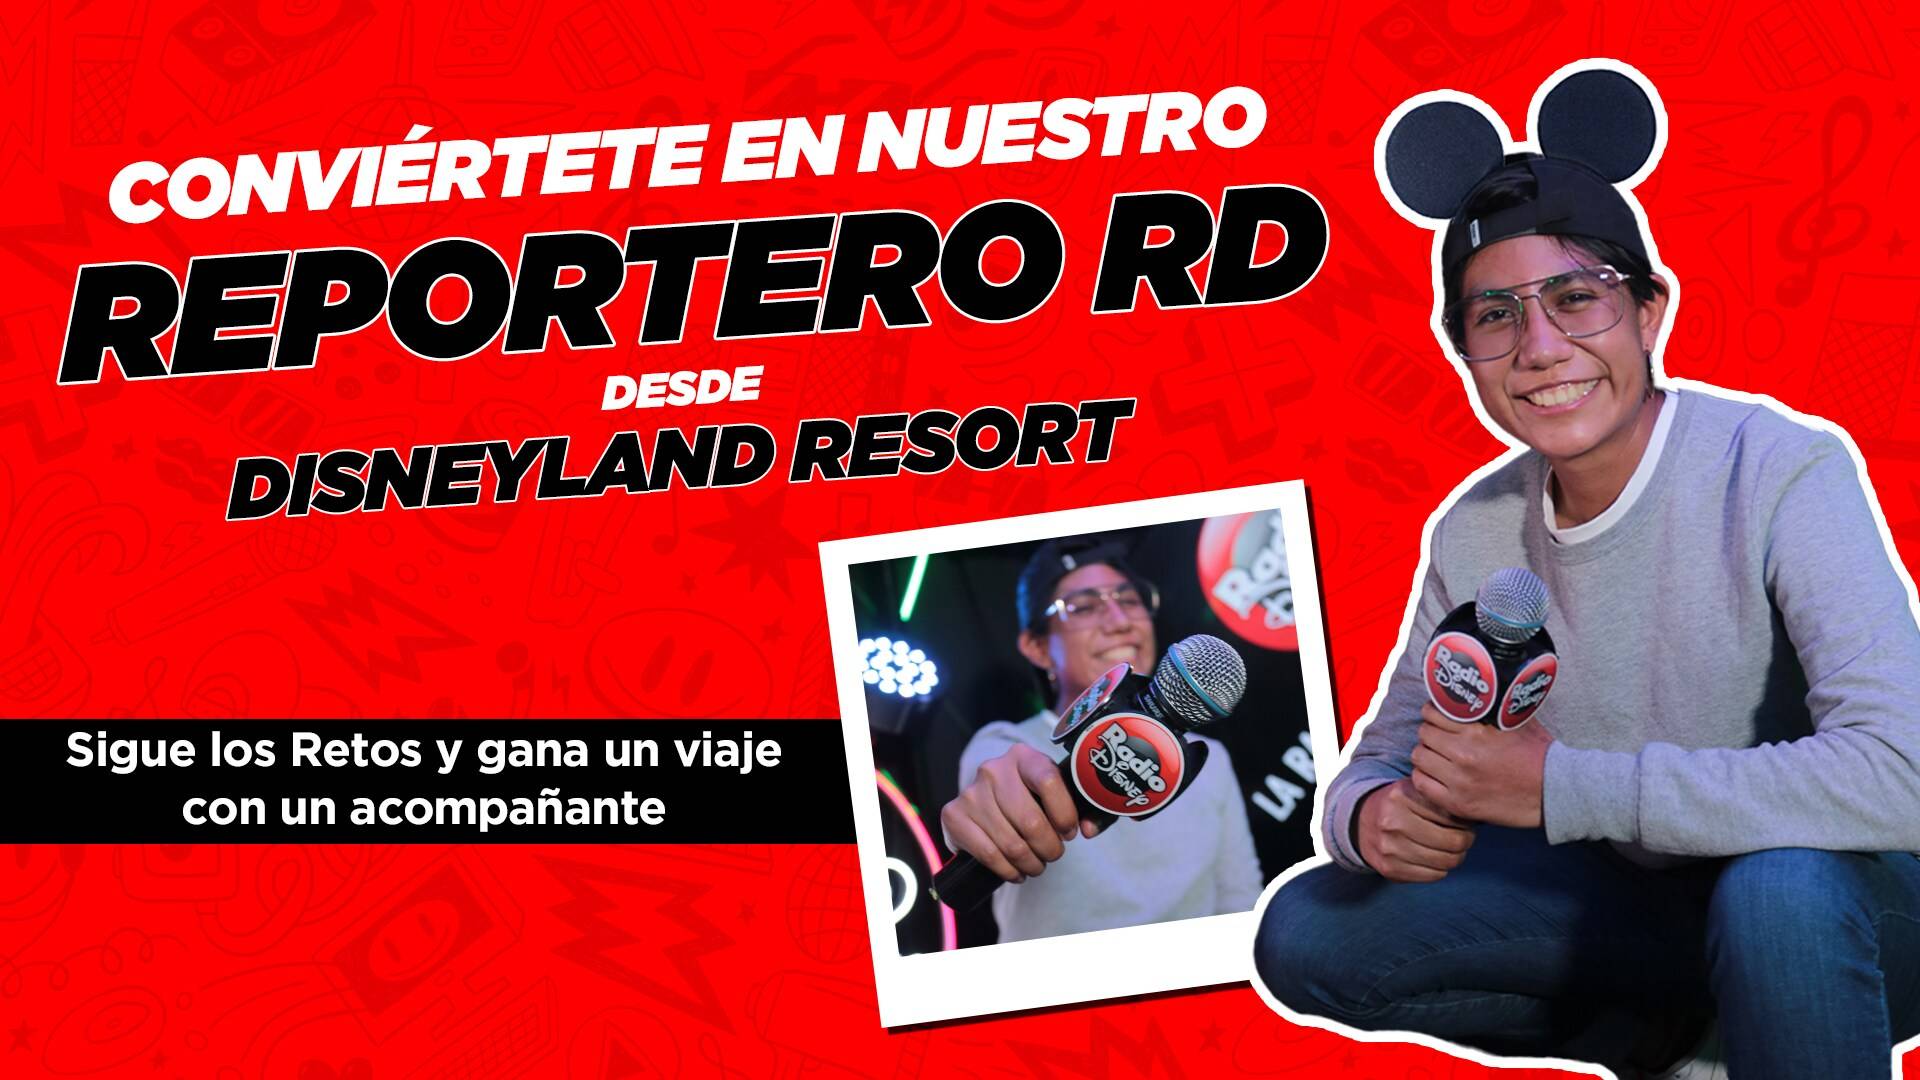 Conviértete en el Reportero RD desde Disneyland Resort, California con Radio Disney